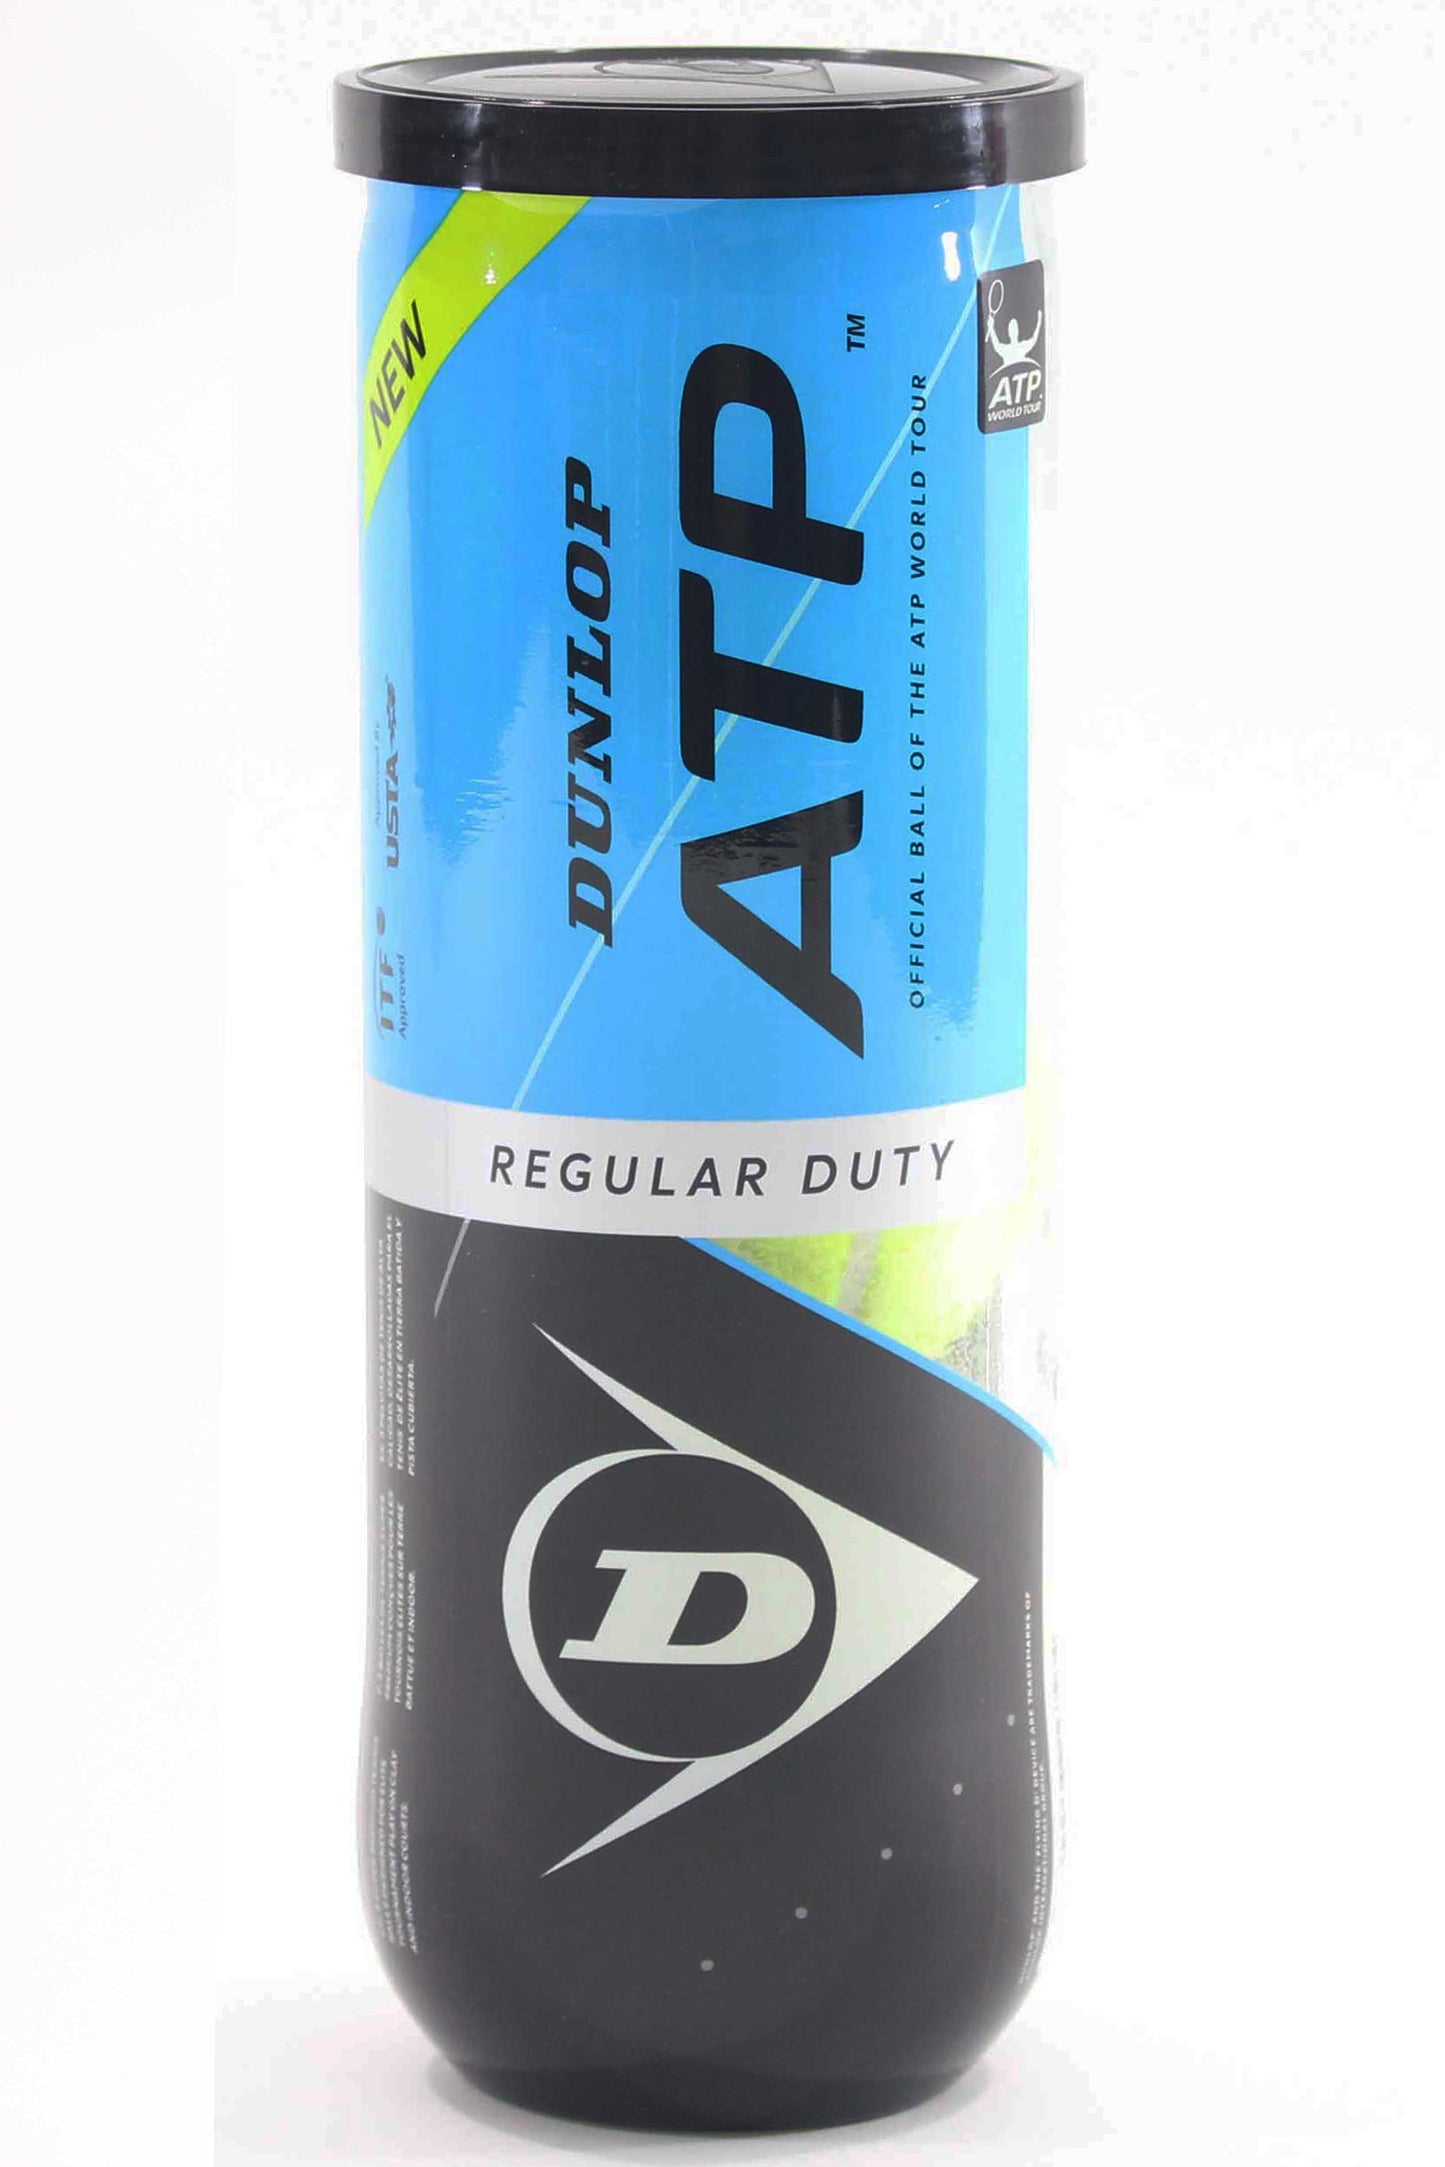 Dunlop balles ATP Regular duty (tube de 3)